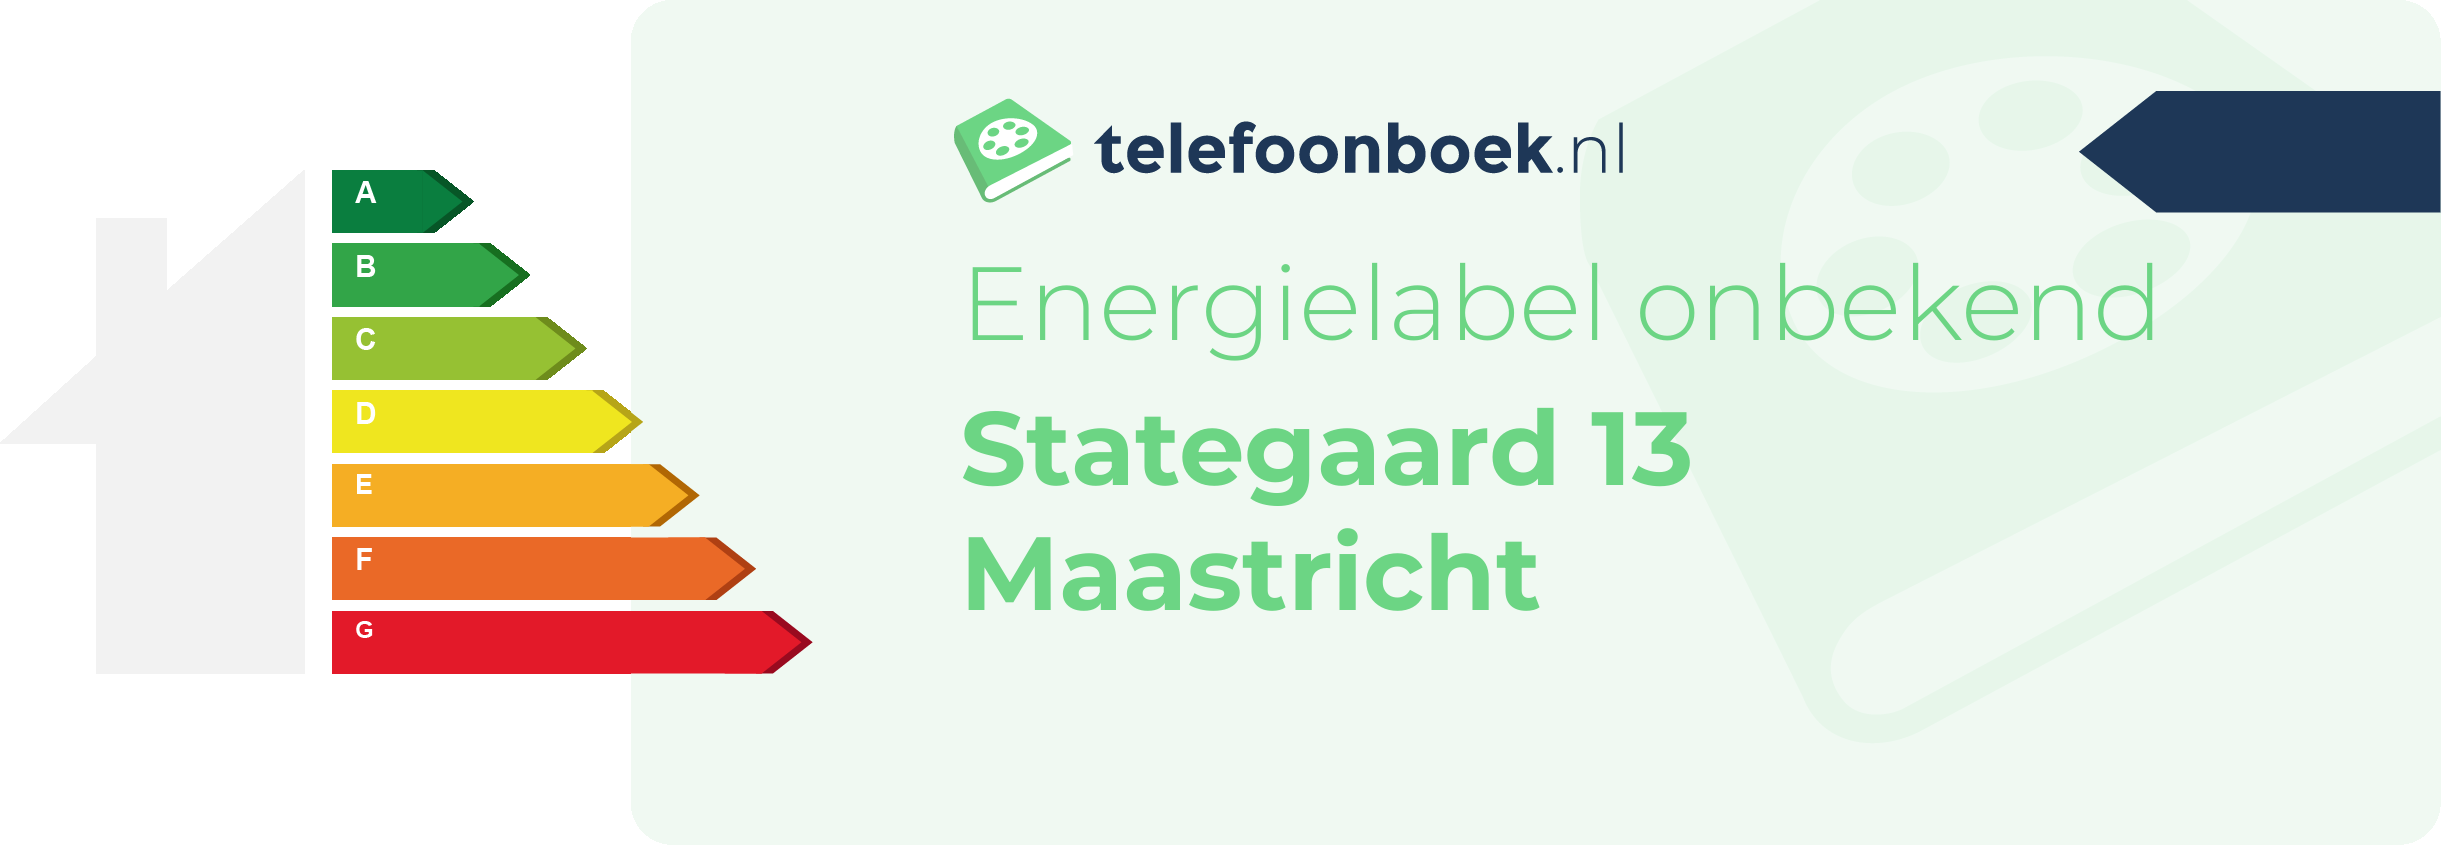 Energielabel Stategaard 13 Maastricht